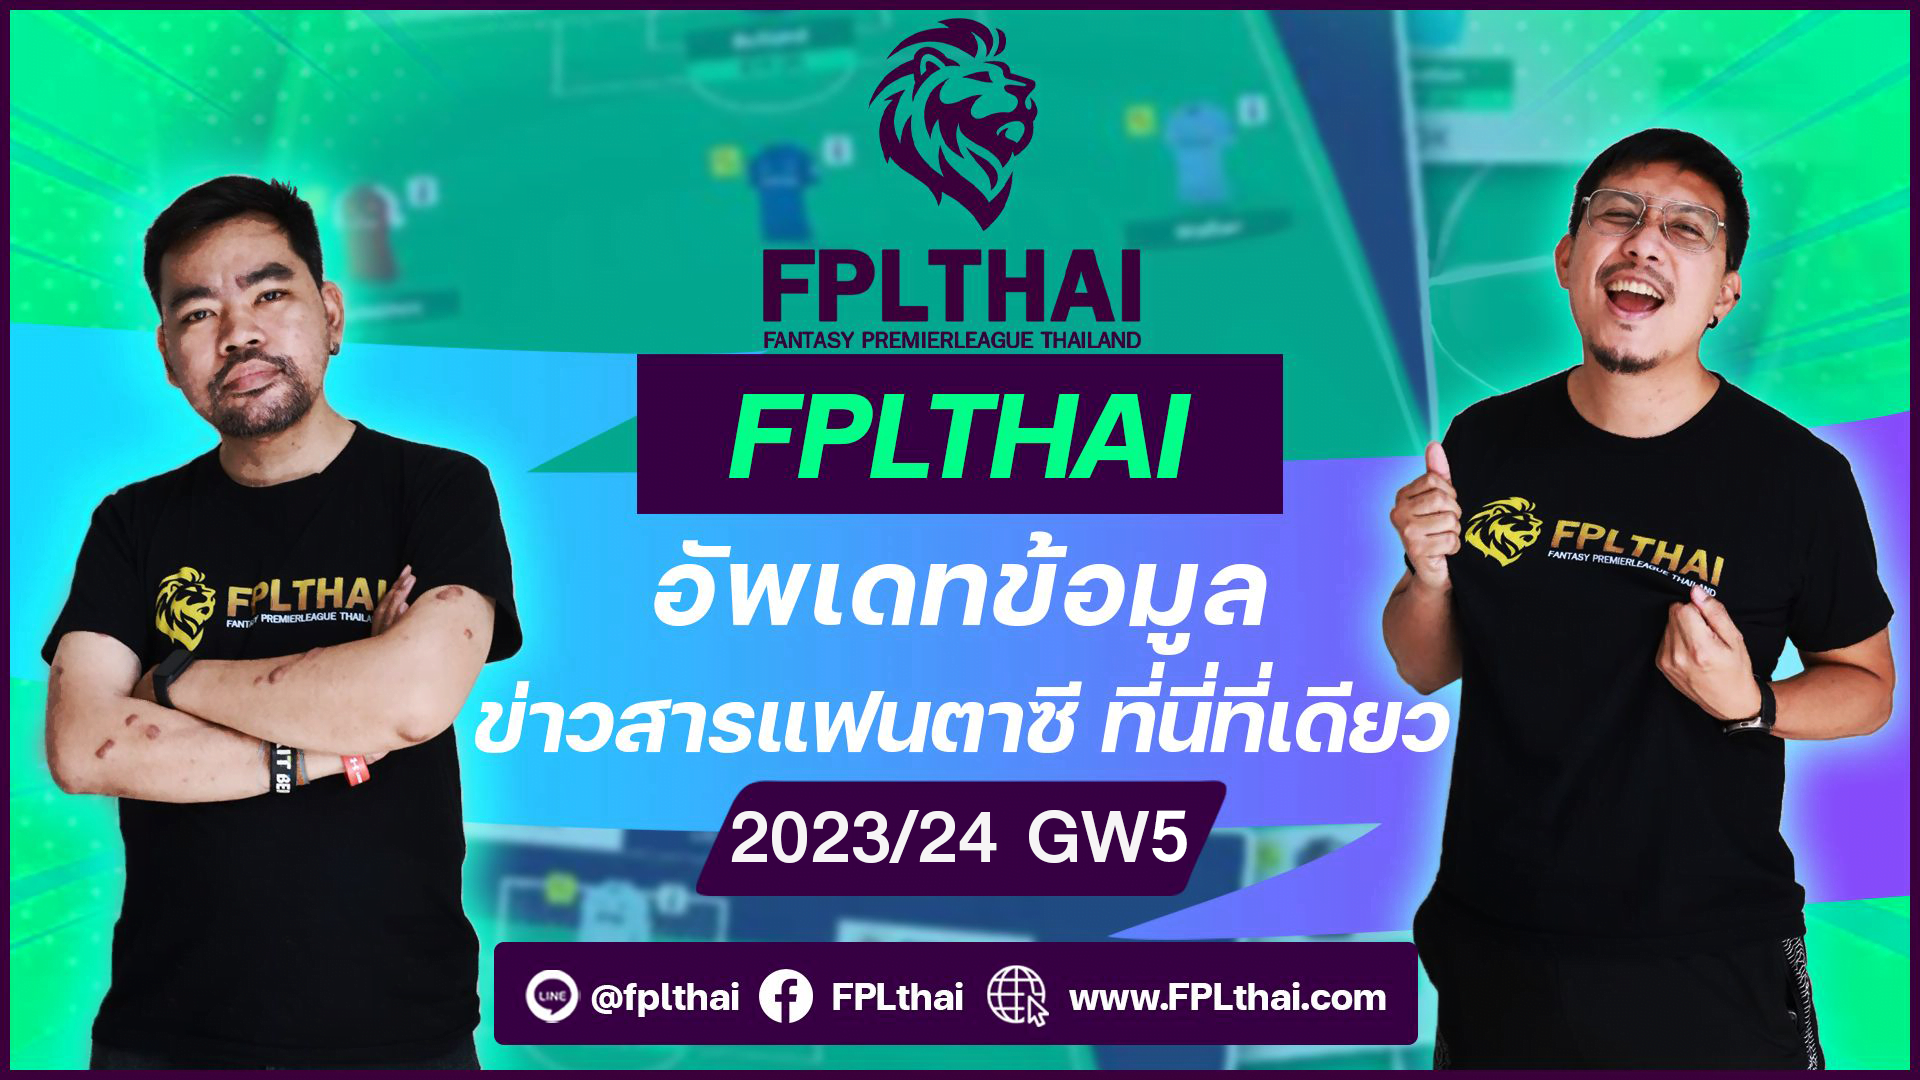 FPLThai 2023/24 GW5